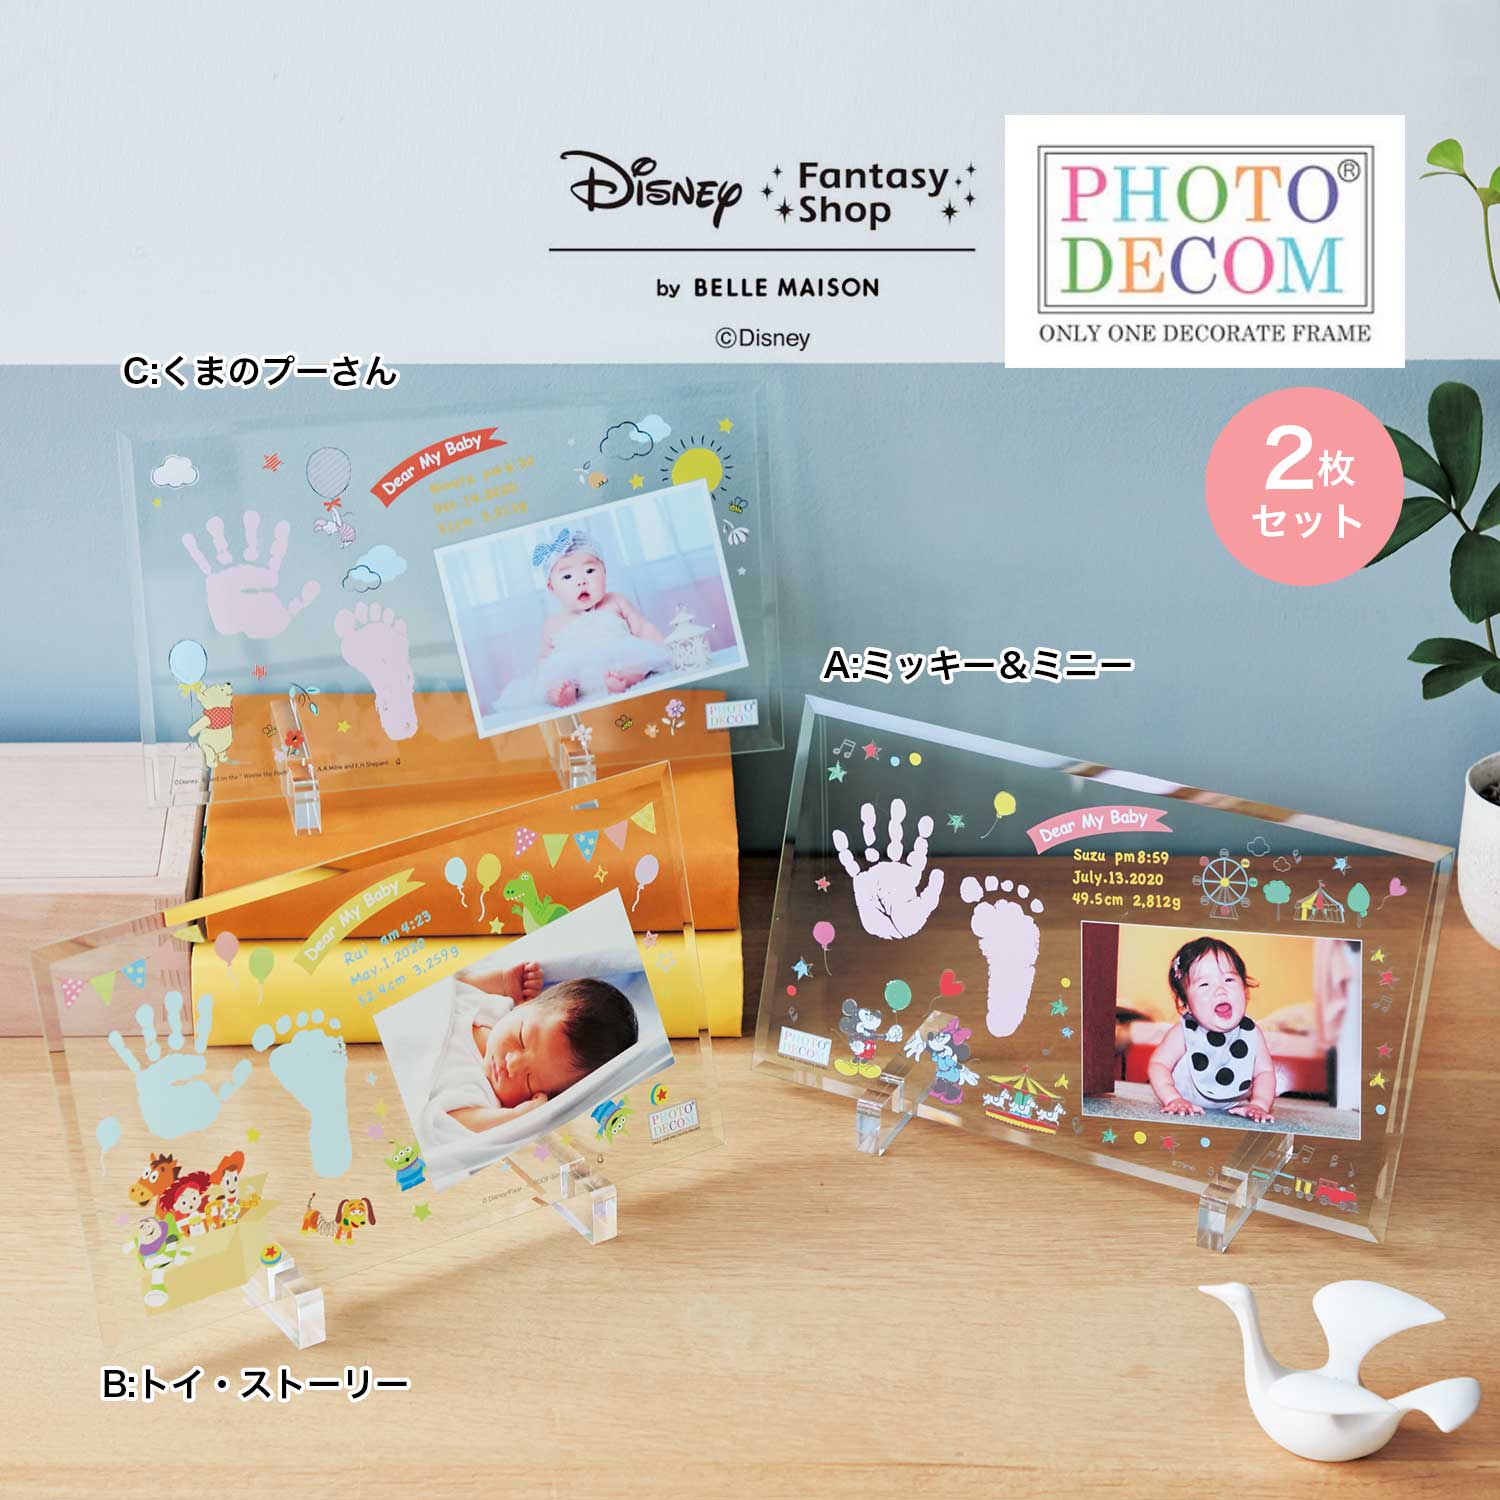 【ディズニー/Disney】【送料無料】 ディズニー フォトデコム・クリアガラス手形足形メモリアルお仕立券2枚セット画像